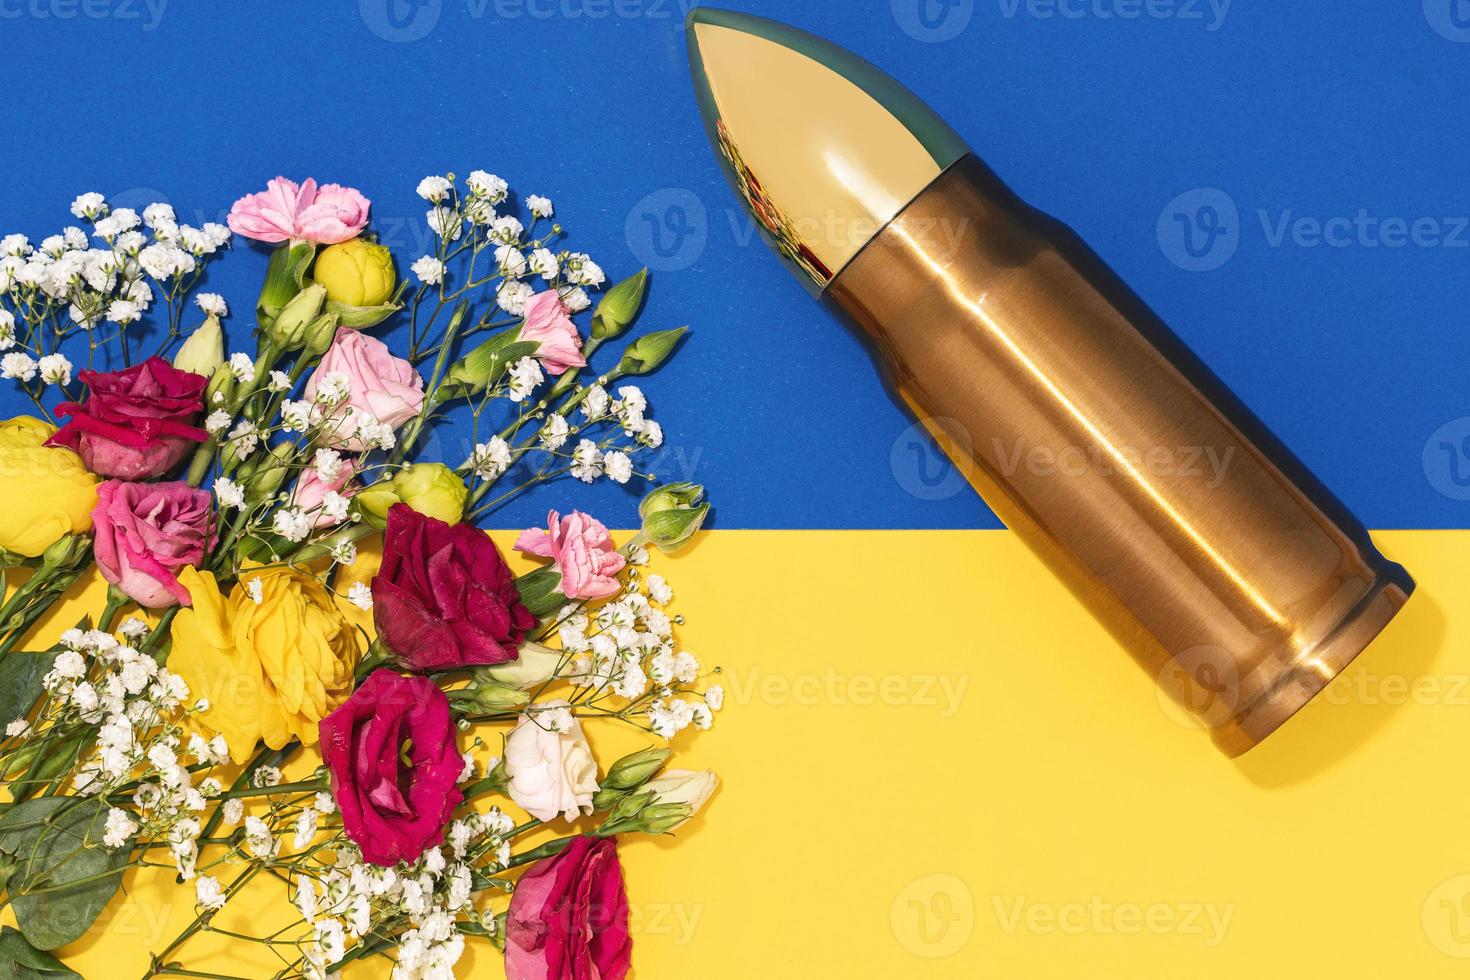 pacifism och ickevåld rörelse. kula och knippa av annorlunda blommor och ukrainska flagga. foto